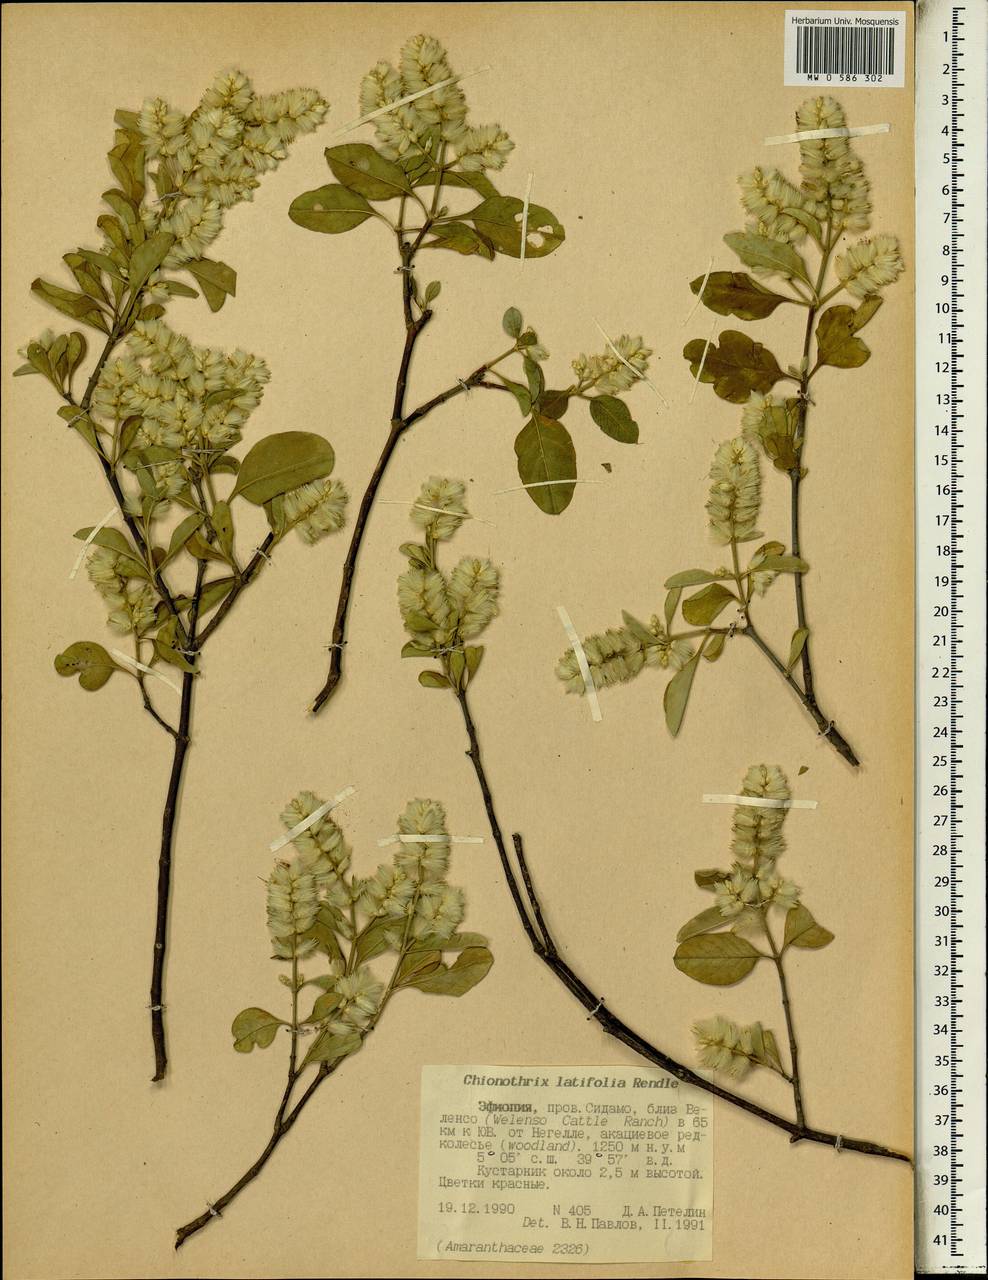 Chionothrix latifolia Rendle, Africa (AFR) (Ethiopia)